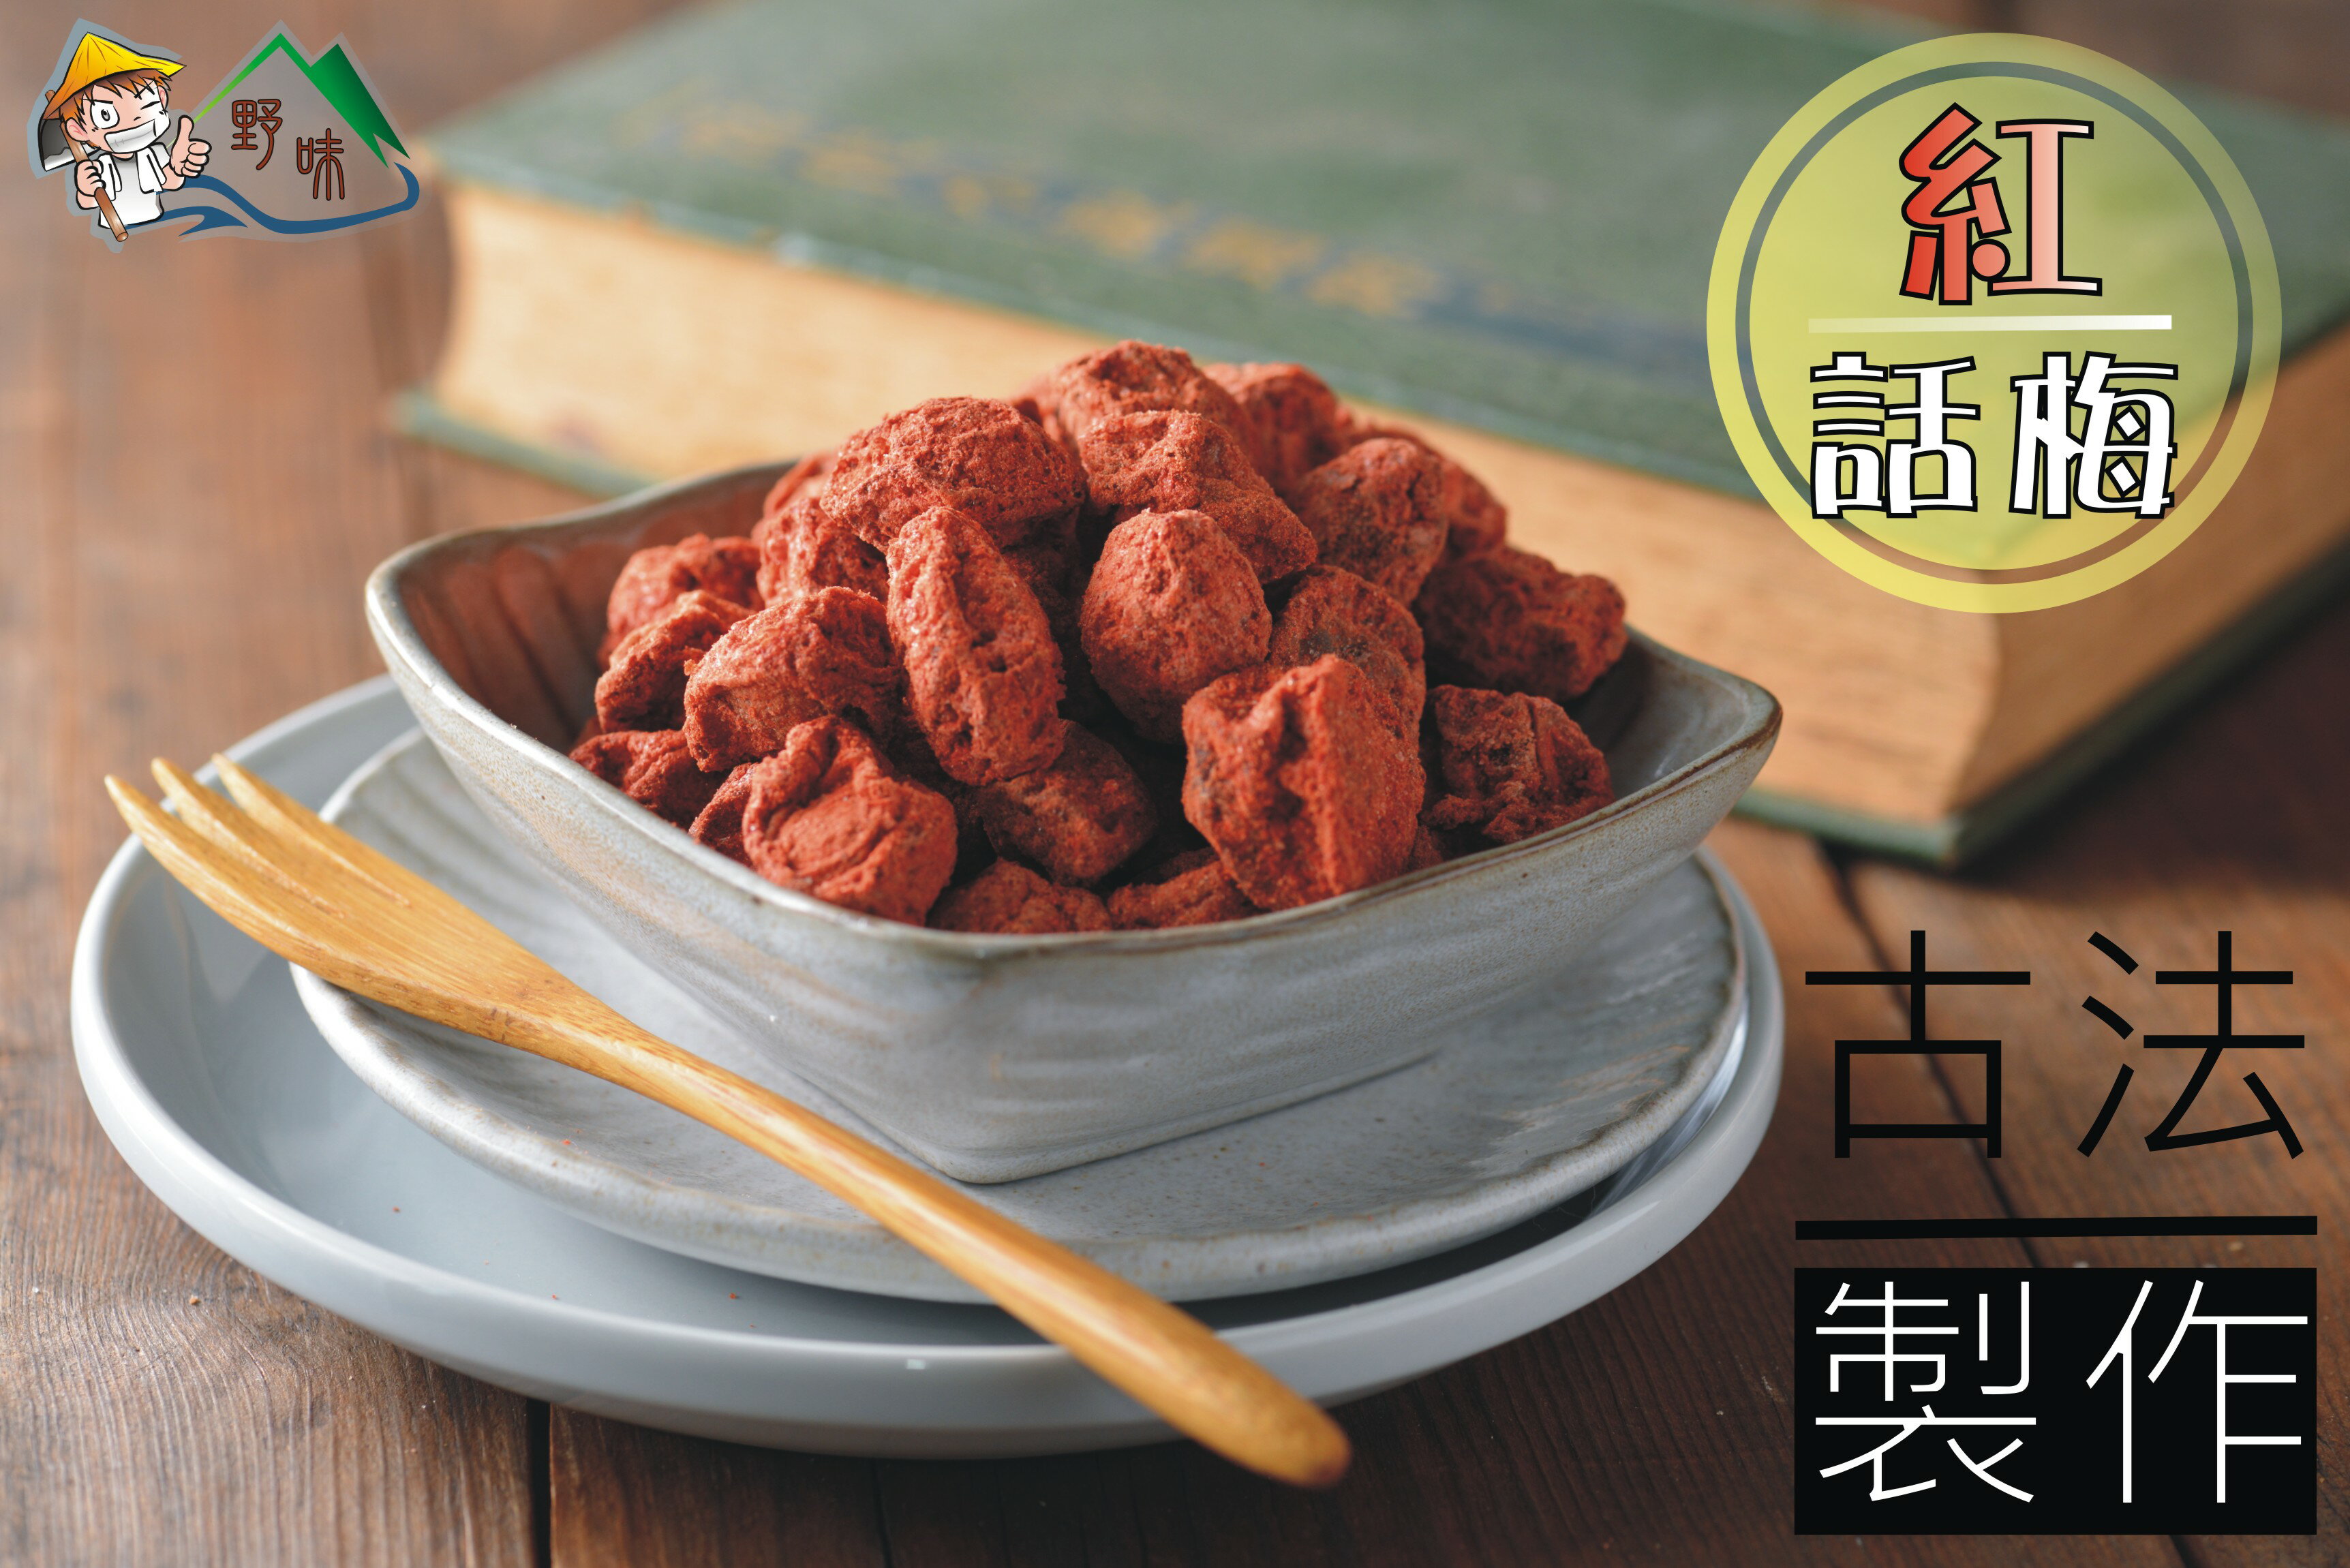 【野味食品】紅話梅165g/包,500g/包(海山調理話梅)